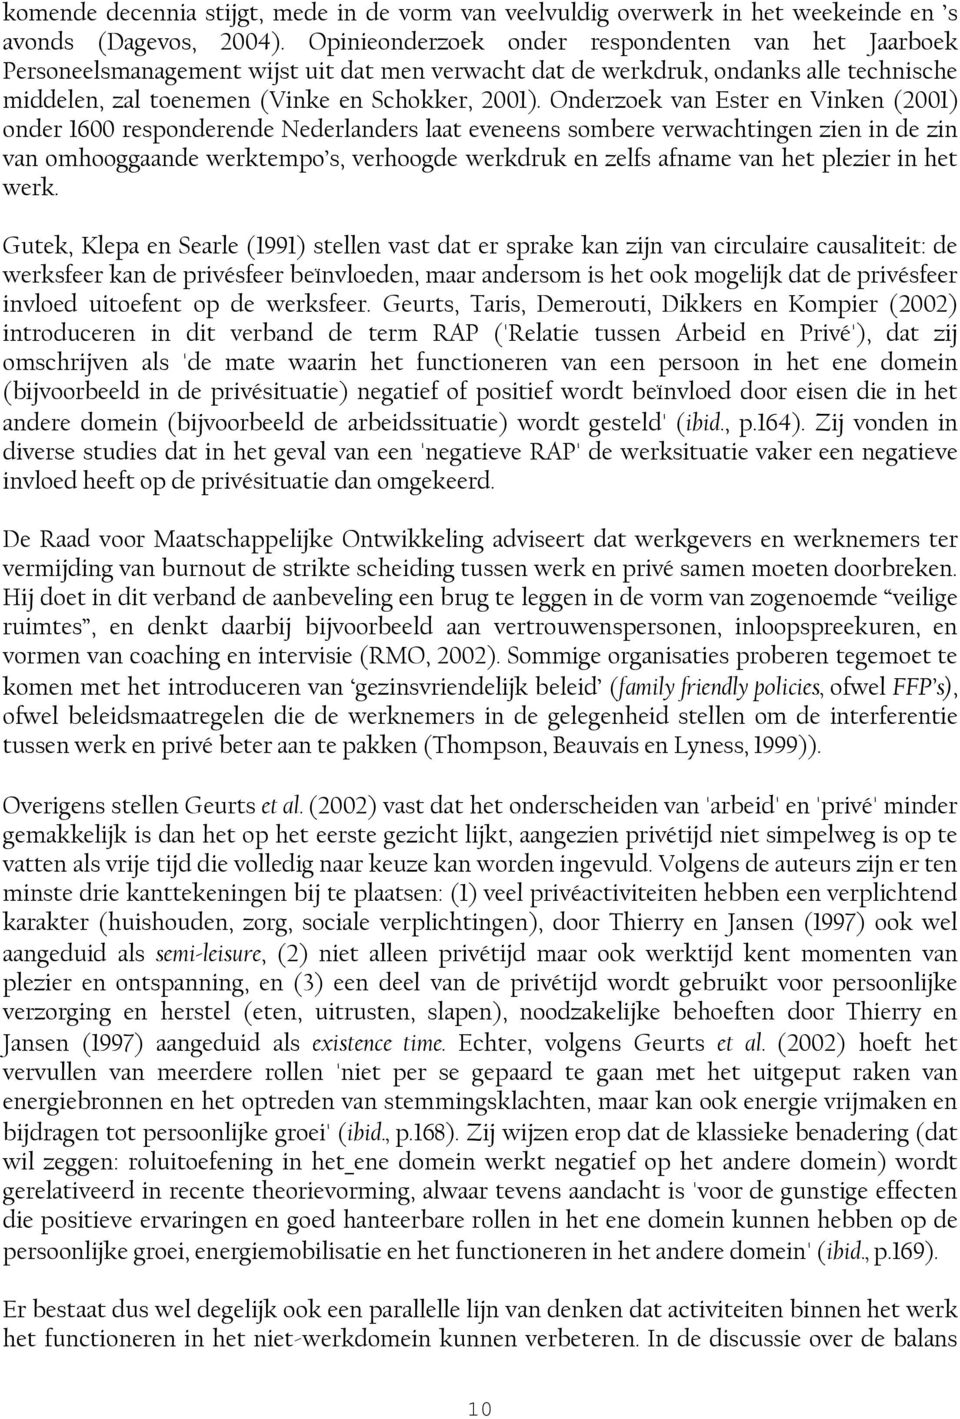 Onderzoek van Ester en Vinken (2001) onder 1600 responderende Nederlanders laat eveneens sombere verwachtingen zien in de zin van omhooggaande werktempo s, verhoogde werkdruk en zelfs afname van het